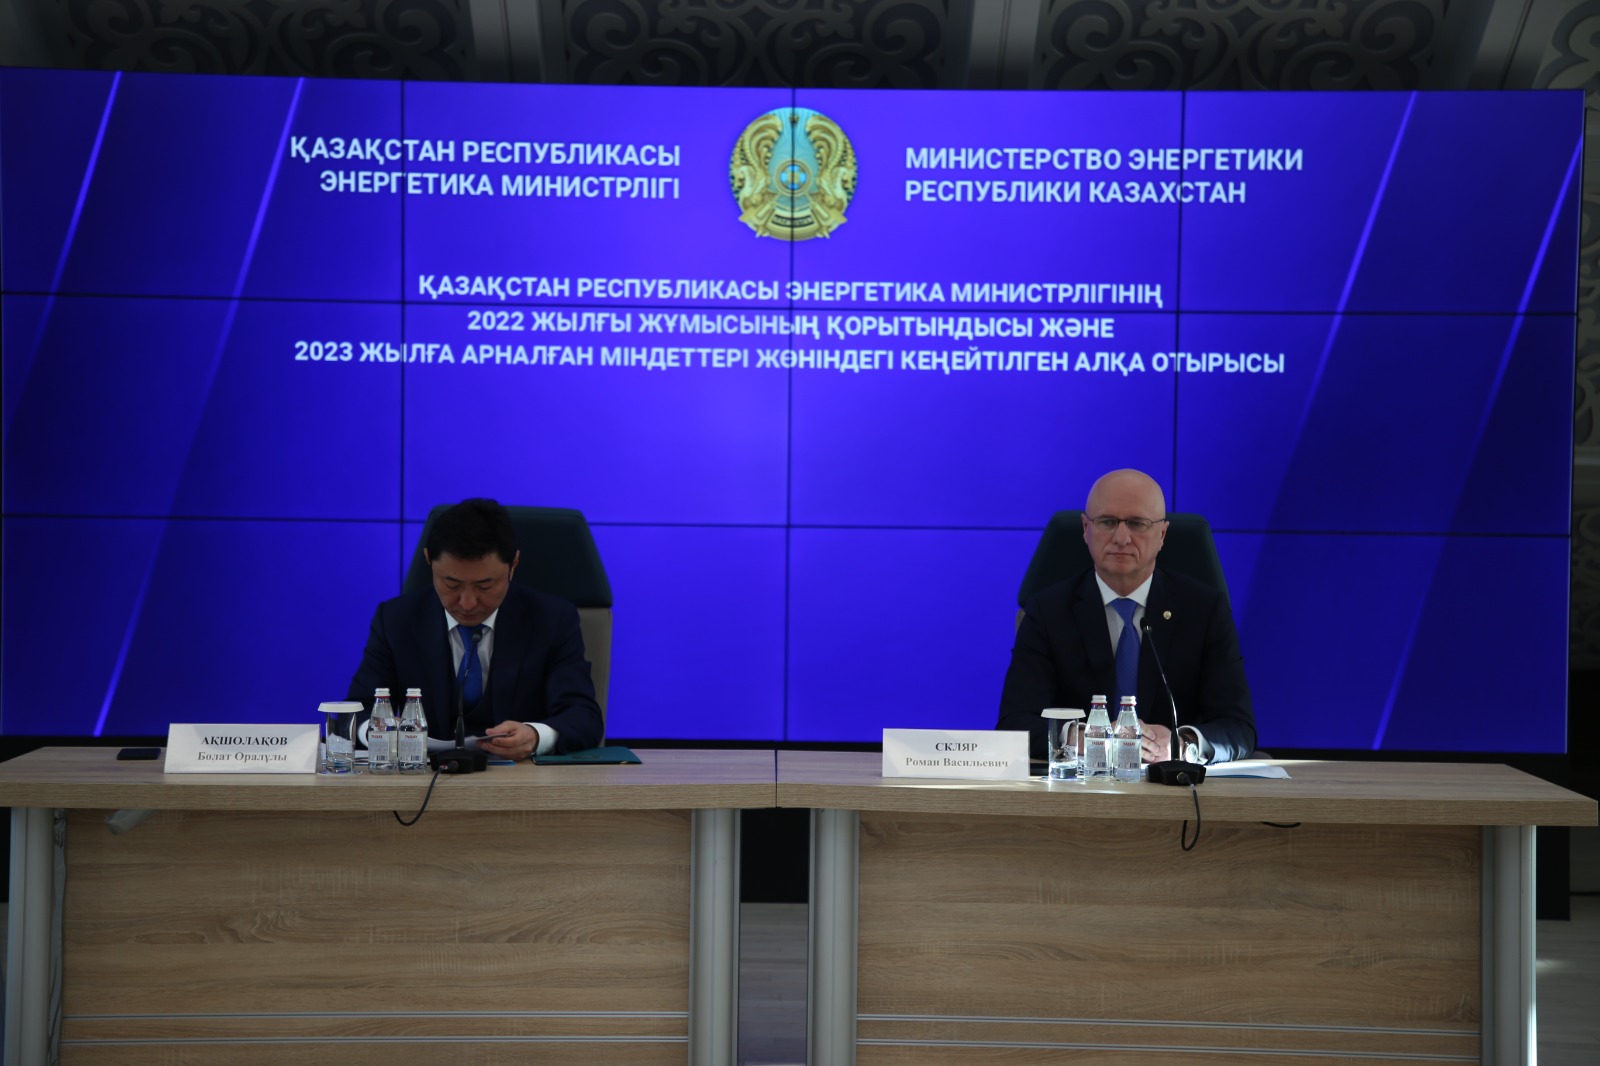 Состоялось расширенное заседание коллегии Министерства энергетики РК  под руководством Романа Скляра